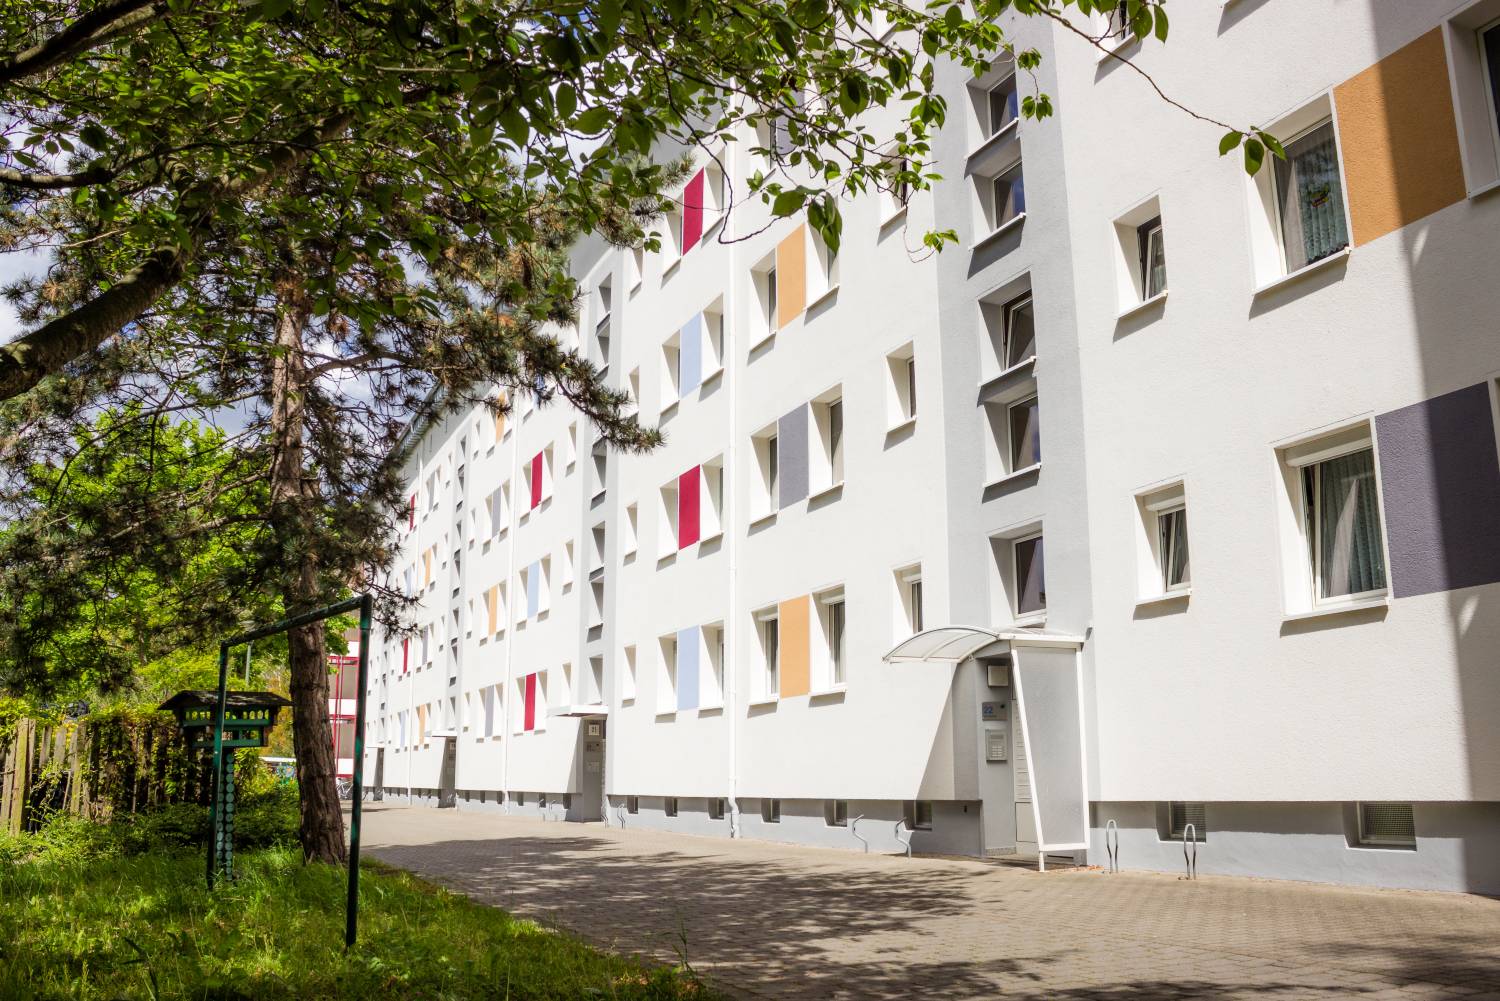 Damit Ihr Zuhause oder Ihre Immobilie in Dessau-Roßlau ihr strahlendes Aussehen zurückerhält, übernehmen wir die Fassadengestaltung.